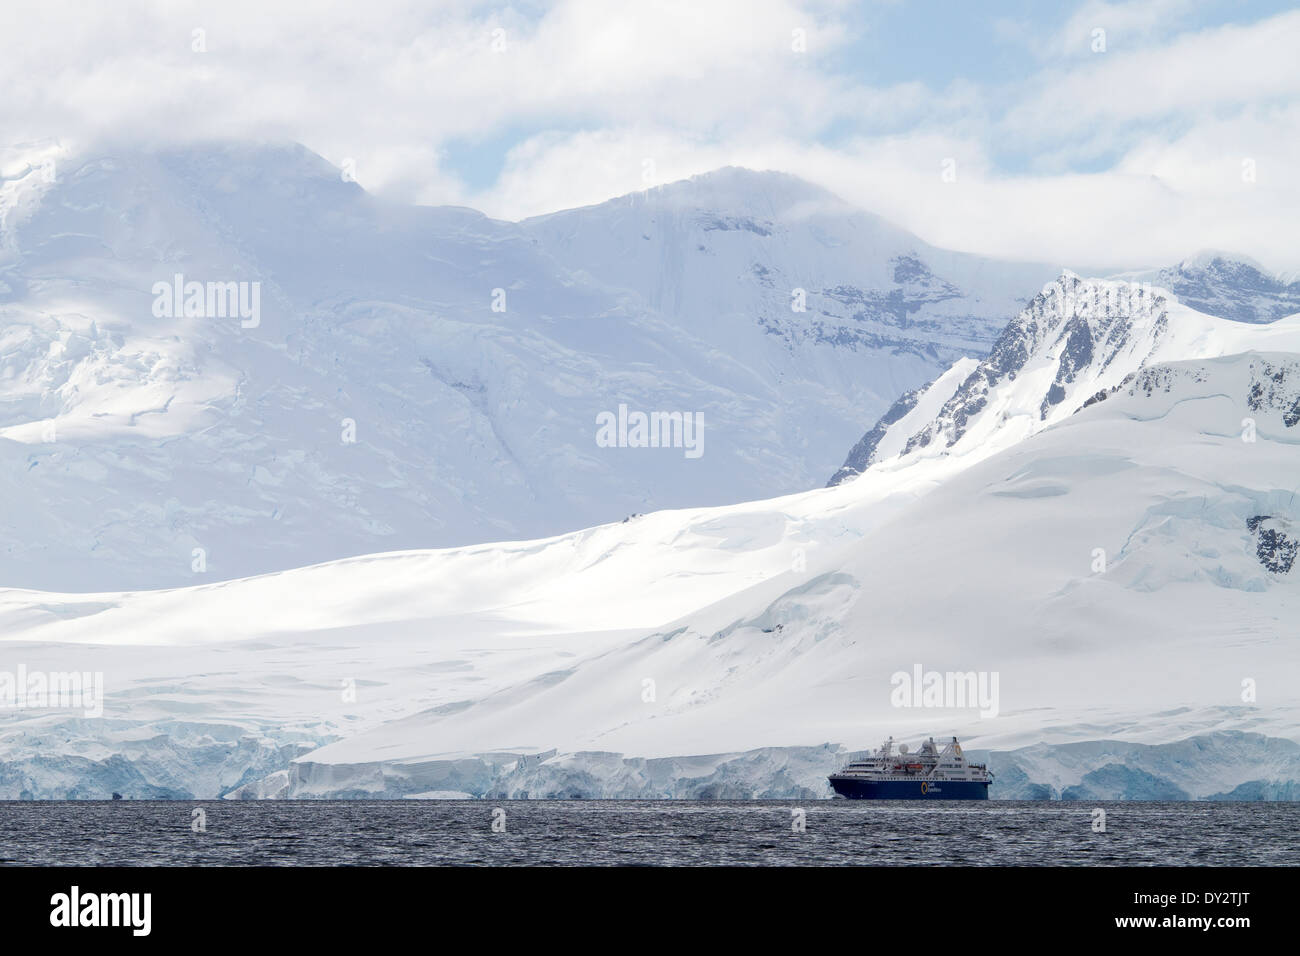 Le tourisme antarctique expedition cruise ship semble faible dans l'Antarctique paysage de montagnes, montagne, péninsule antarctique. Banque D'Images